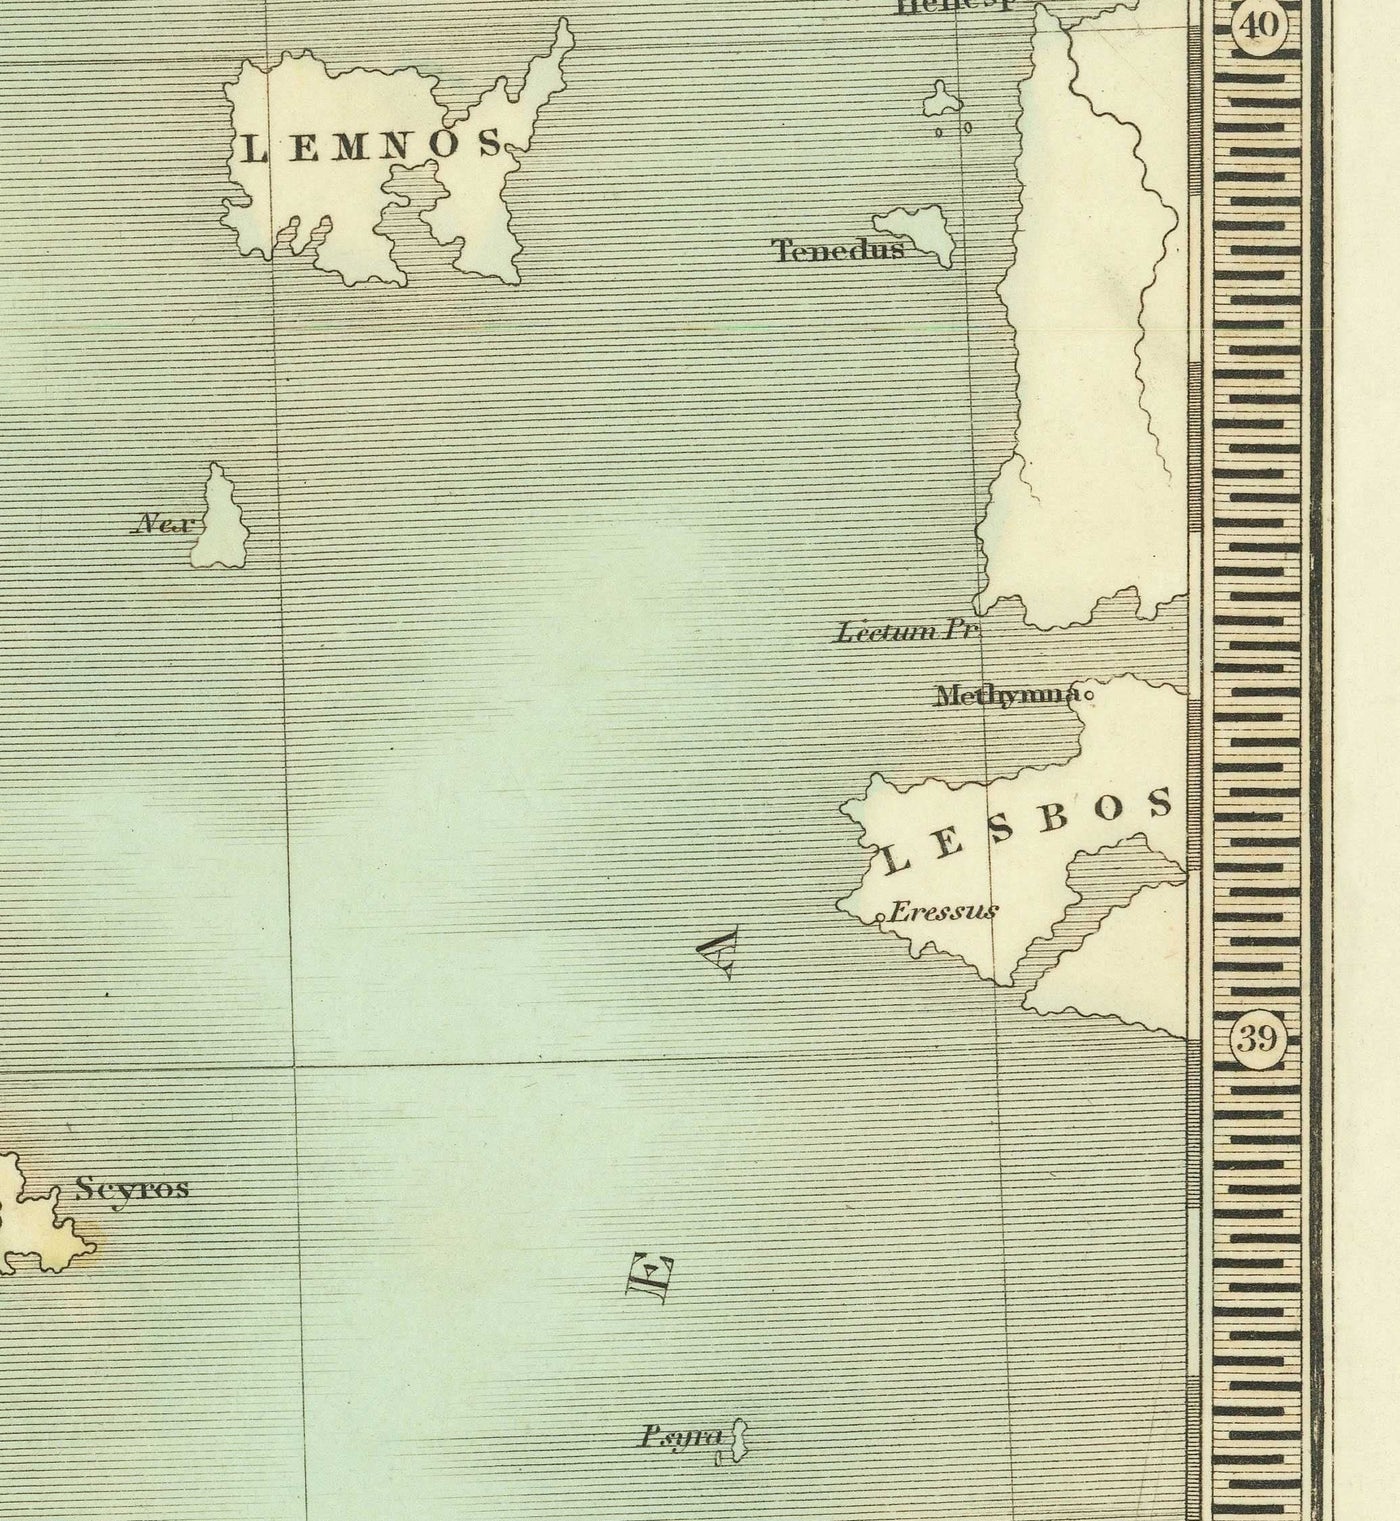 Ancienne carte de la Grèce antique, 1834, par Teesdale - Crète, Macédoine, Corfou, Albanie, Athènes, Thessalie, Attique